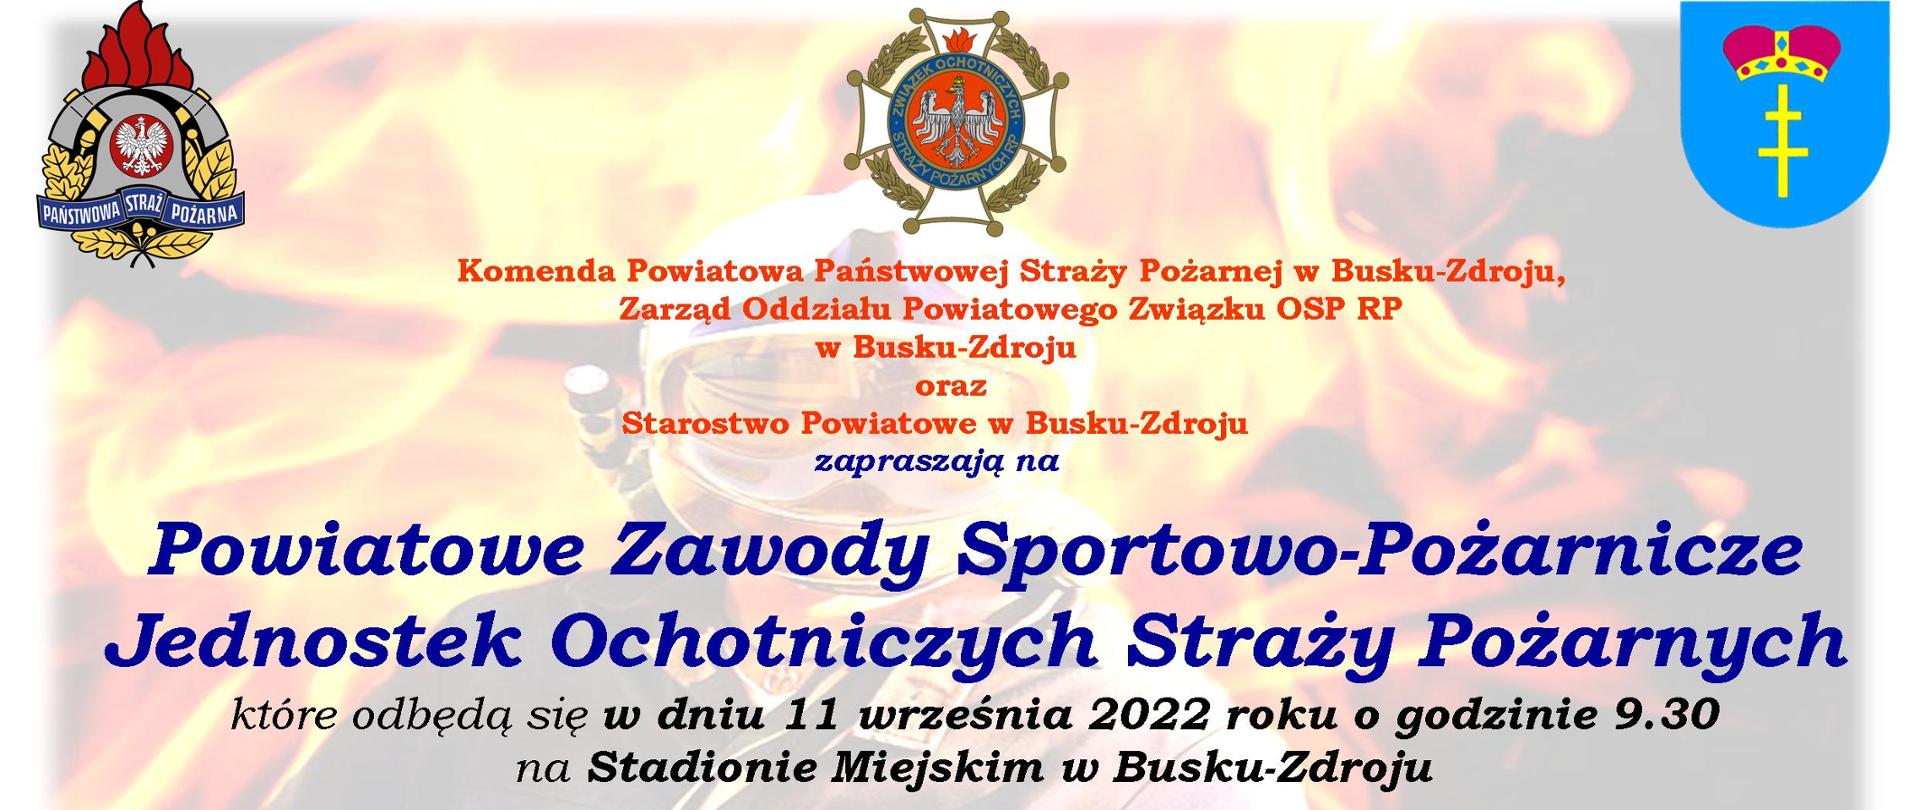 Zdjęcie przedstawia plakat zawierający logo Państwowej Straży Pożarnej, Związku Ochotniczych Straży Pożarnych oraz powiatu buskiego zapraszających jako organizatorzy na zawody powiatowe Ochotniczych Straży Pożarnych, które odbędą się w dniu 11 września 2022 roku o godzinie 9:00 na stadionie miejskim w Busku-Zdroju.